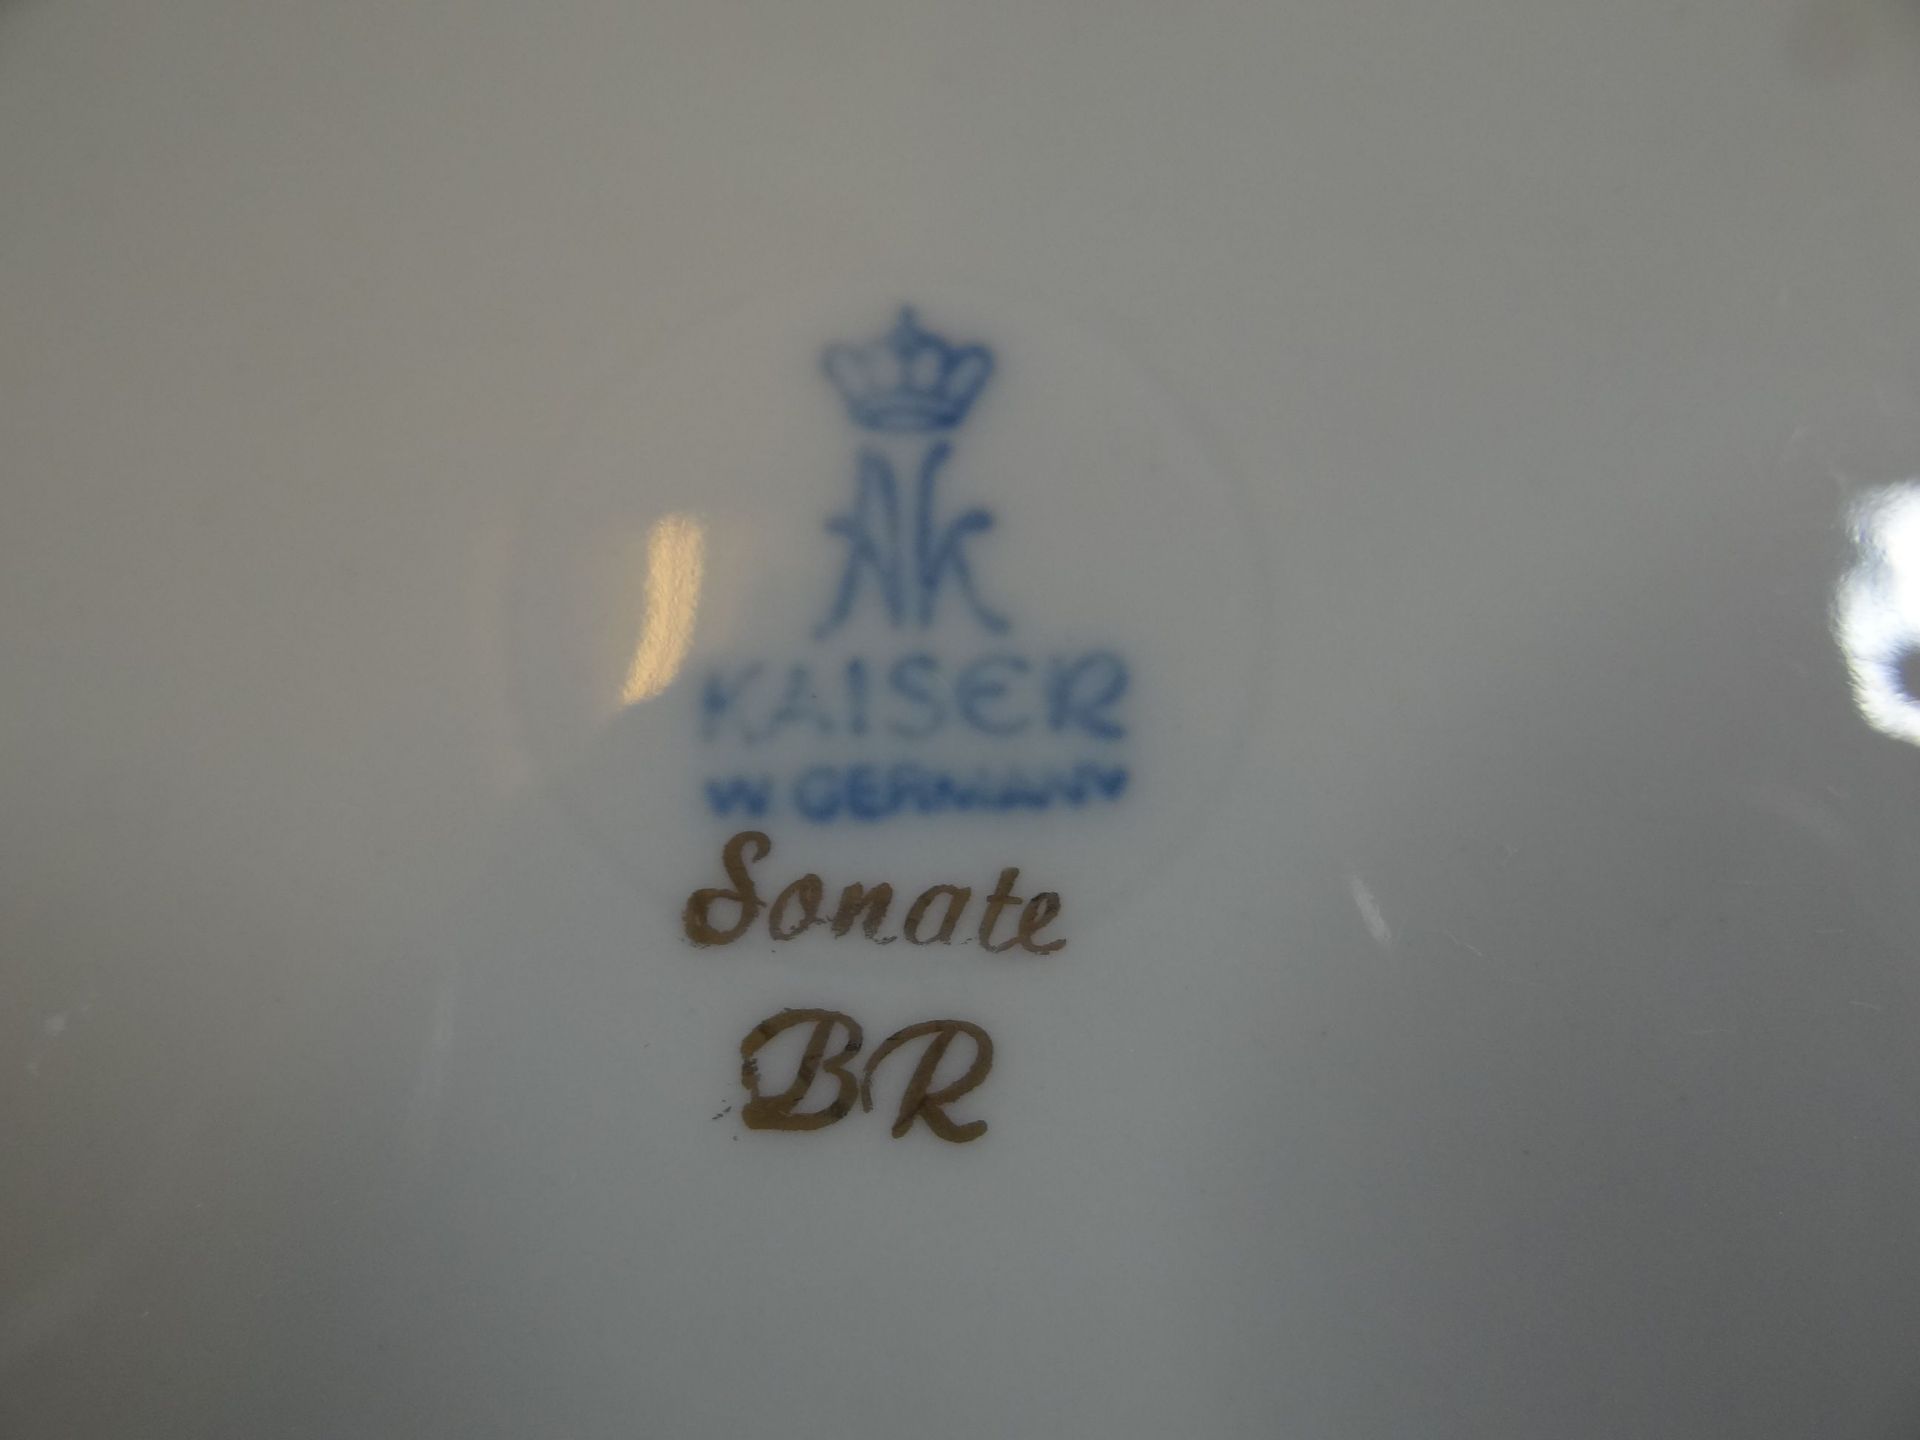 Blattschale "Kaiser" Dekor Sonate, 22x16 cm - Image 4 of 4